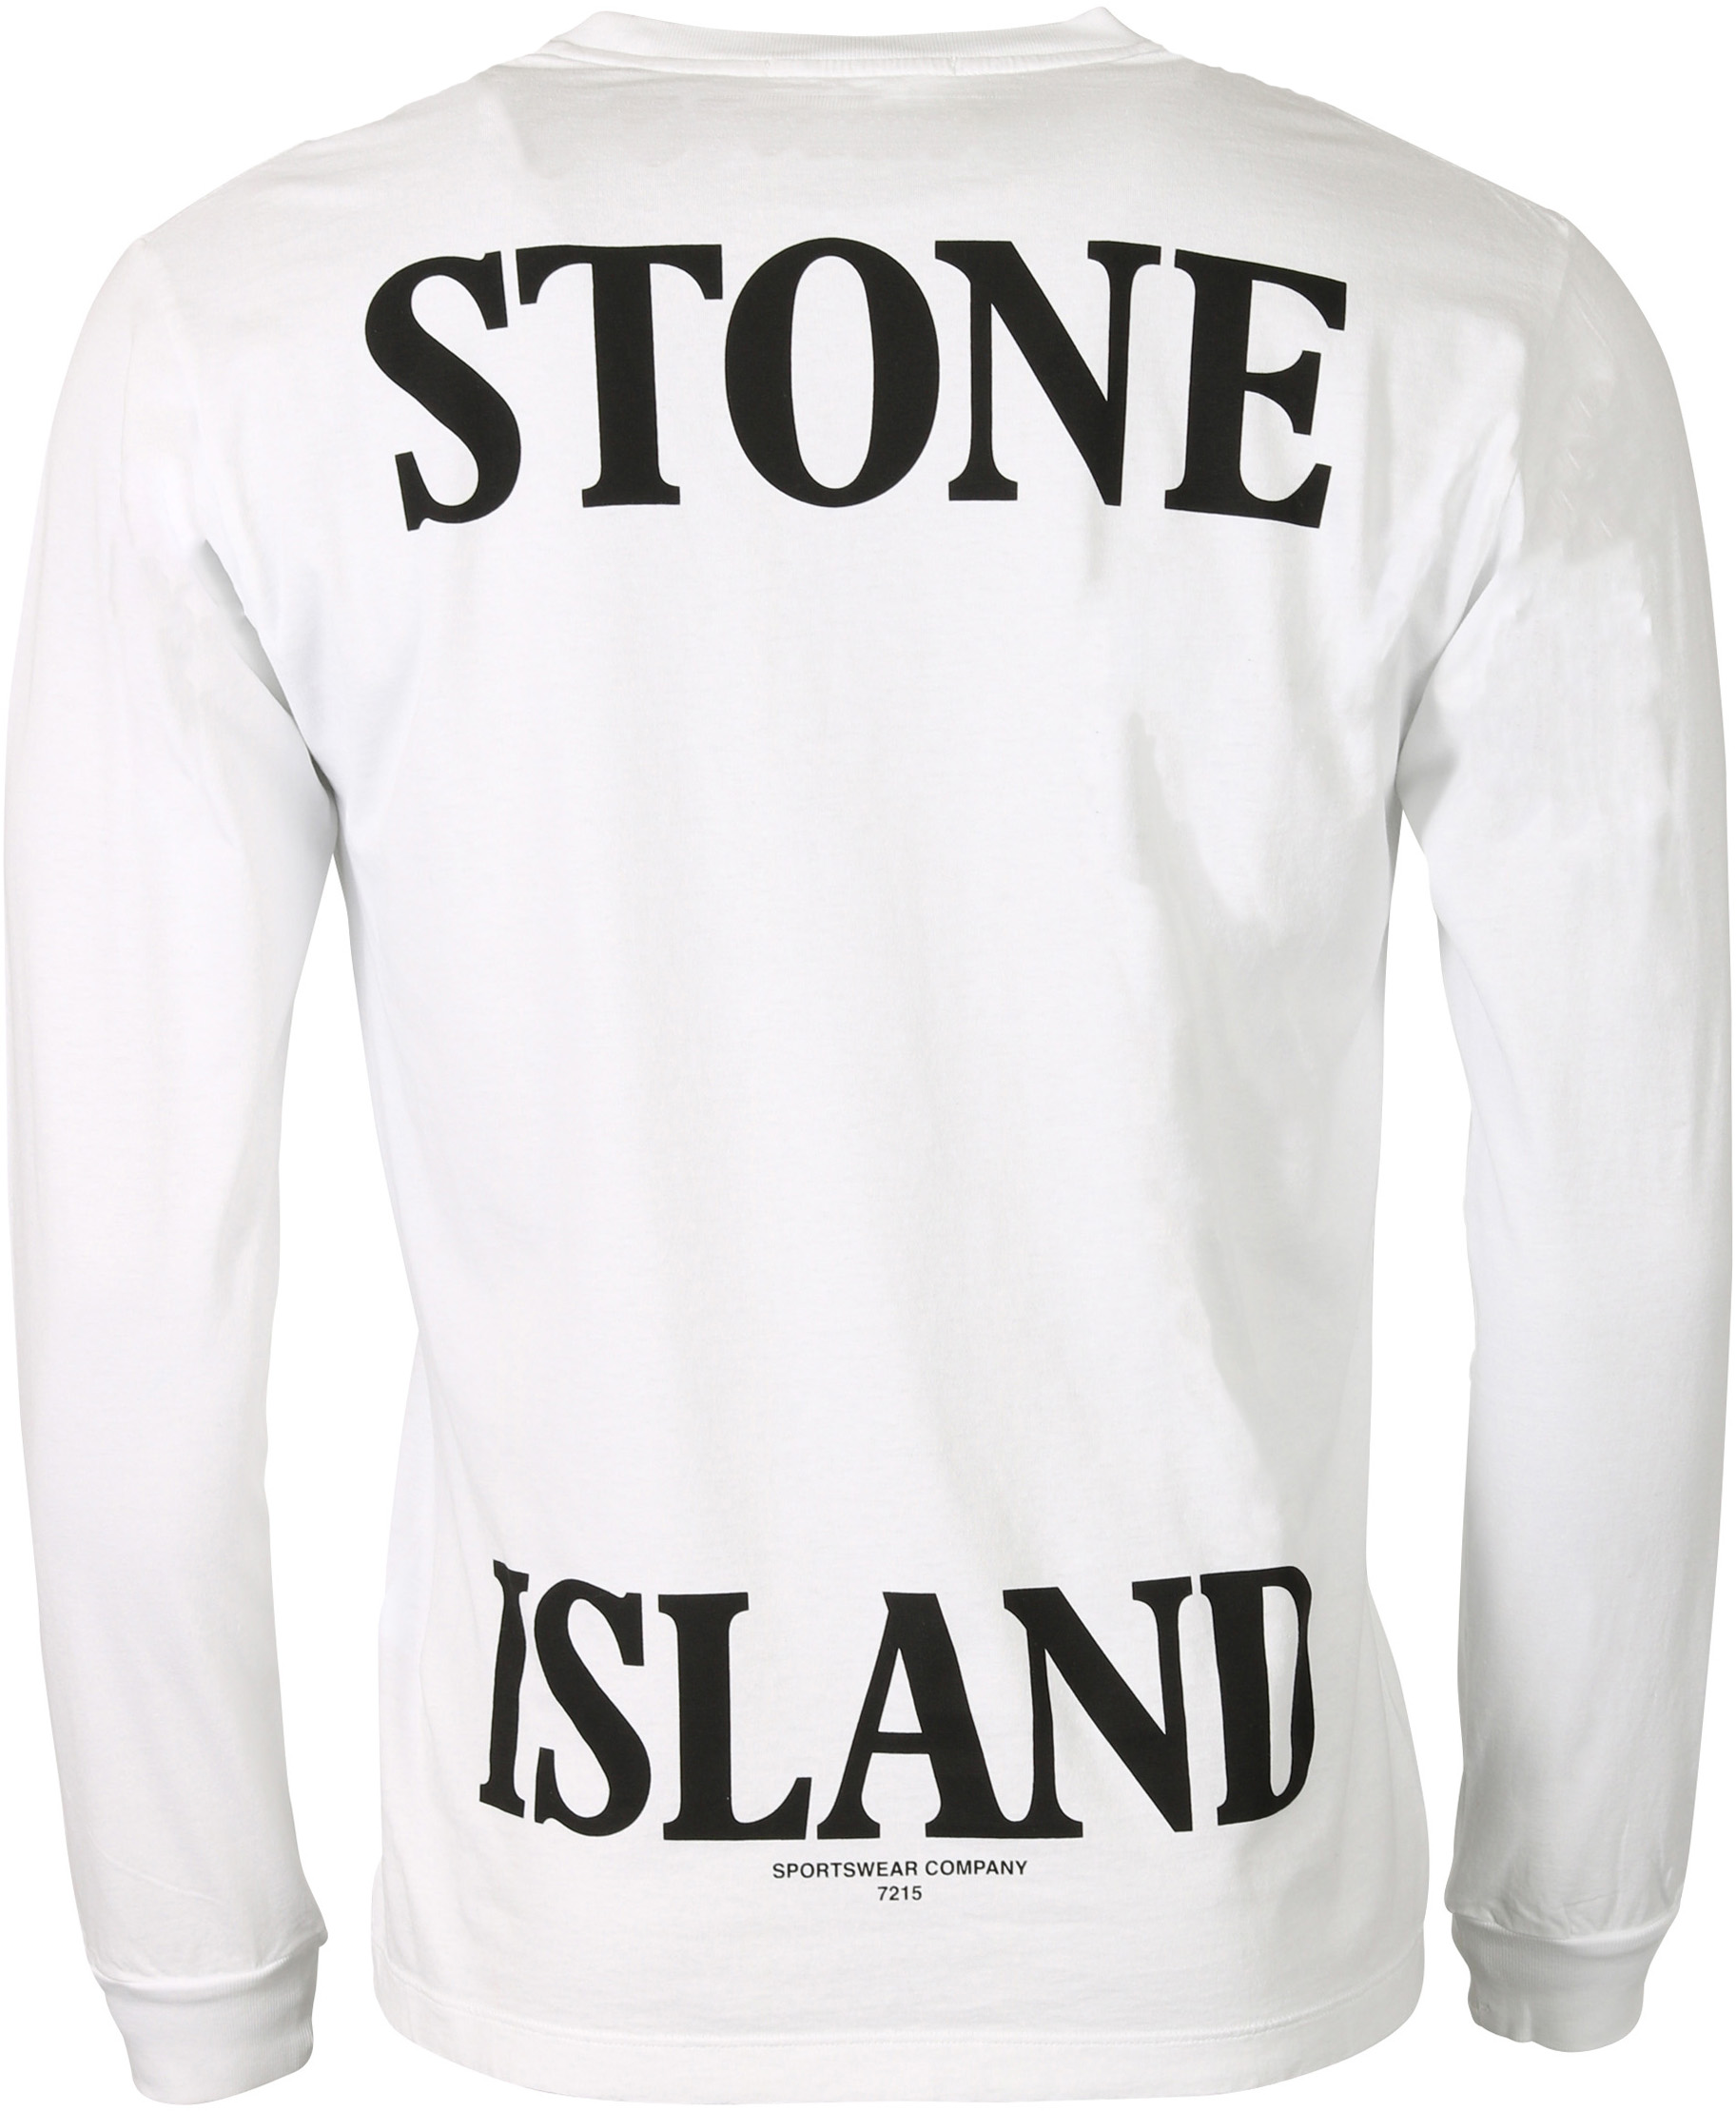 Stone Island Longsleeve White Printed S